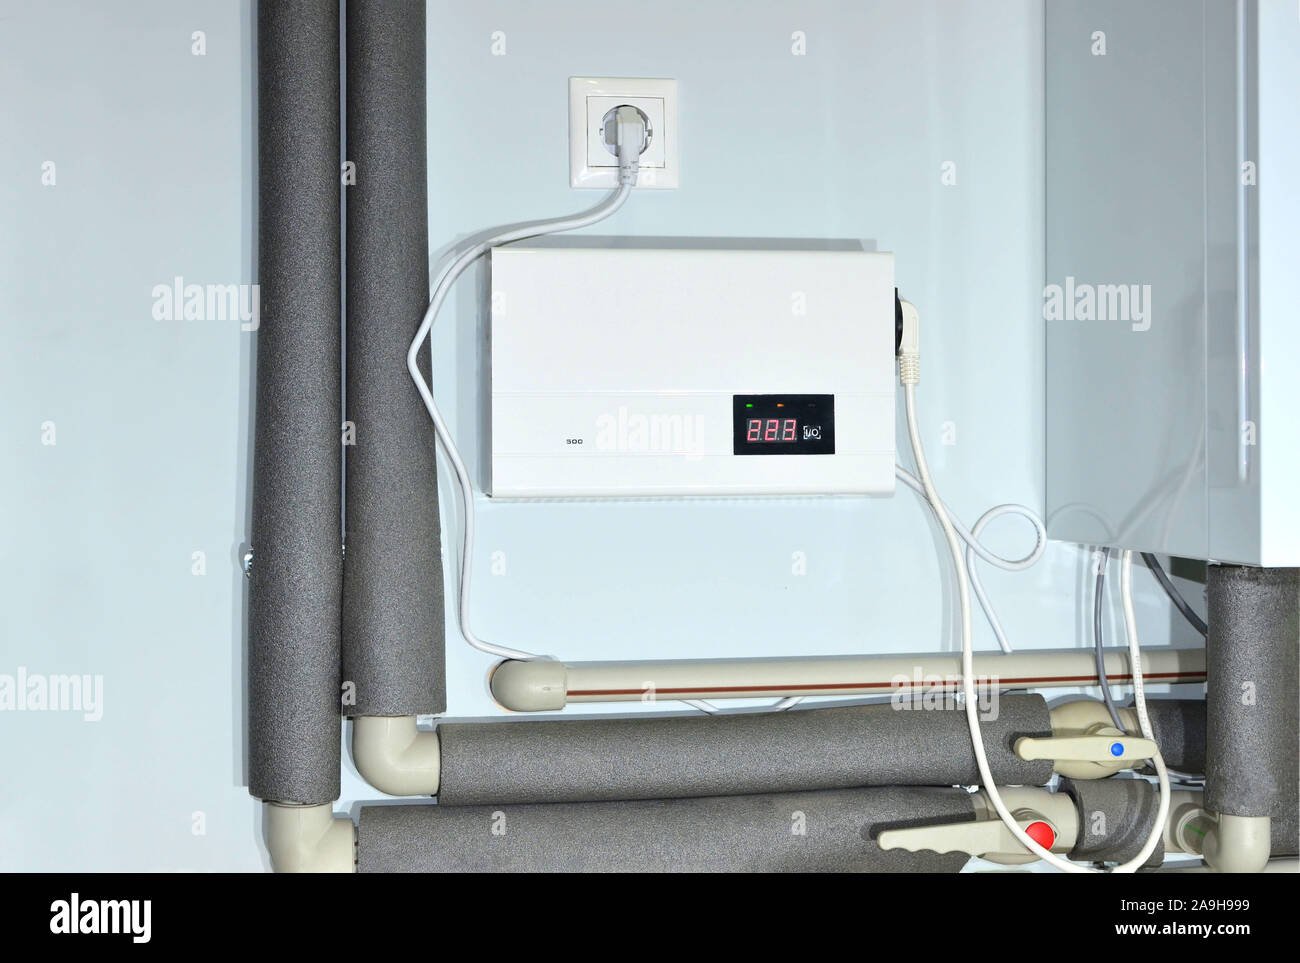 Kompakte Wand Automatischer Spannungsregler (AVR) für Gas Boiler zu  schützen. Manometer im Kesselraum in der Nähe der Heizrohre mit Isolierung  Beschichtung Stockfotografie - Alamy